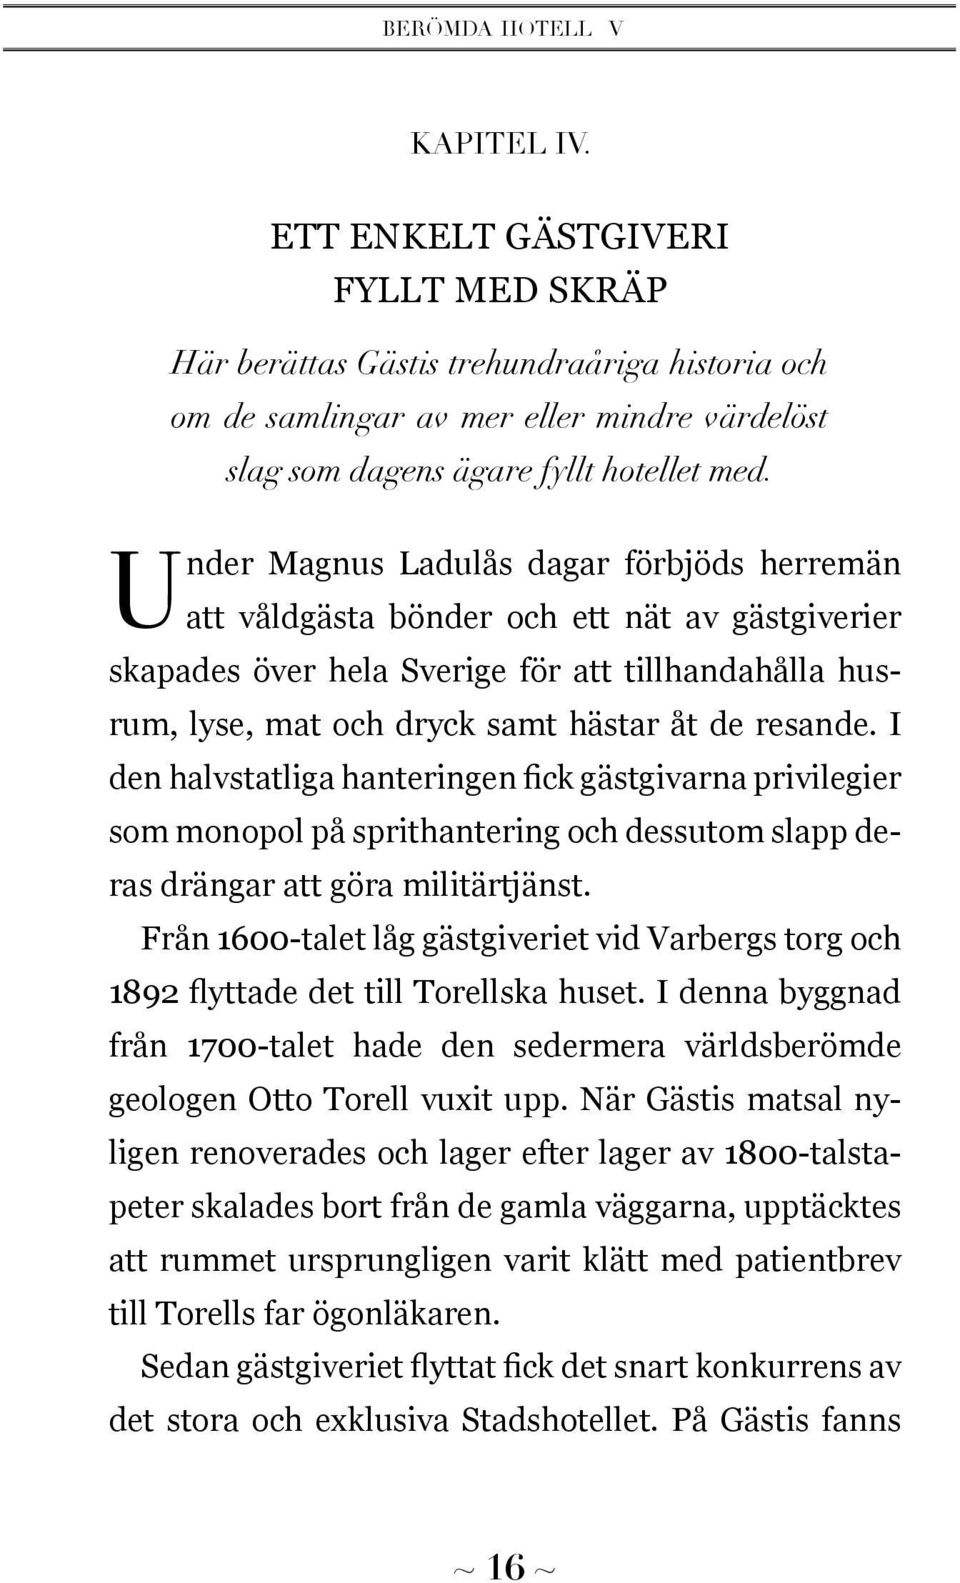 Under Magnus Ladulås dagar förbjöds herremän att våldgästa bönder och ett nät av gästgiverier skapades över hela Sverige för att tillhandahålla husrum, lyse, mat och dryck samt hästar åt de resande.